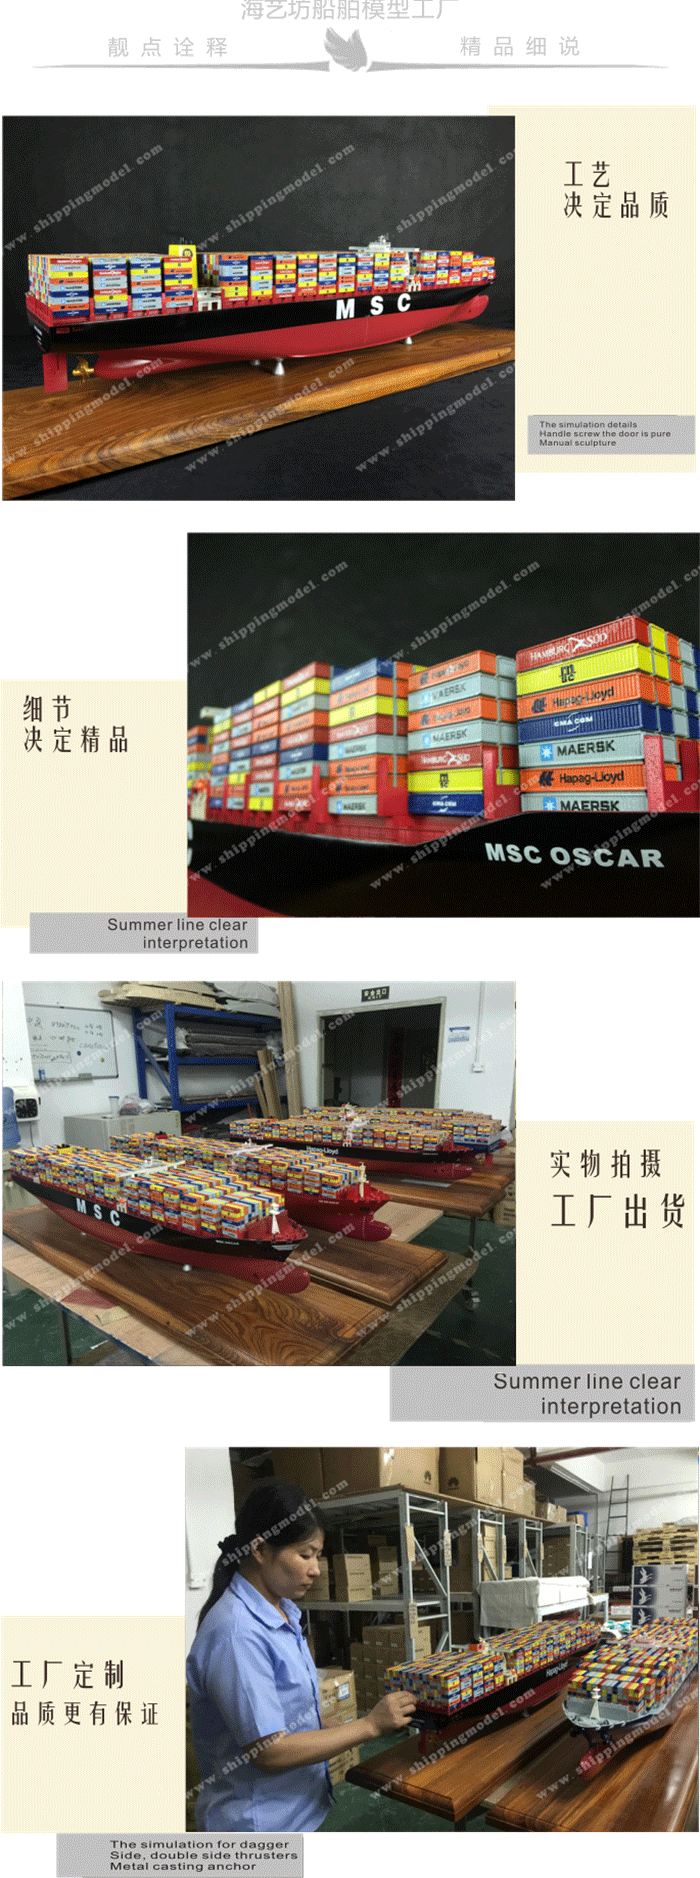 定制船模_ 120cm MSC地中海集装箱船模型 _海艺坊模型工